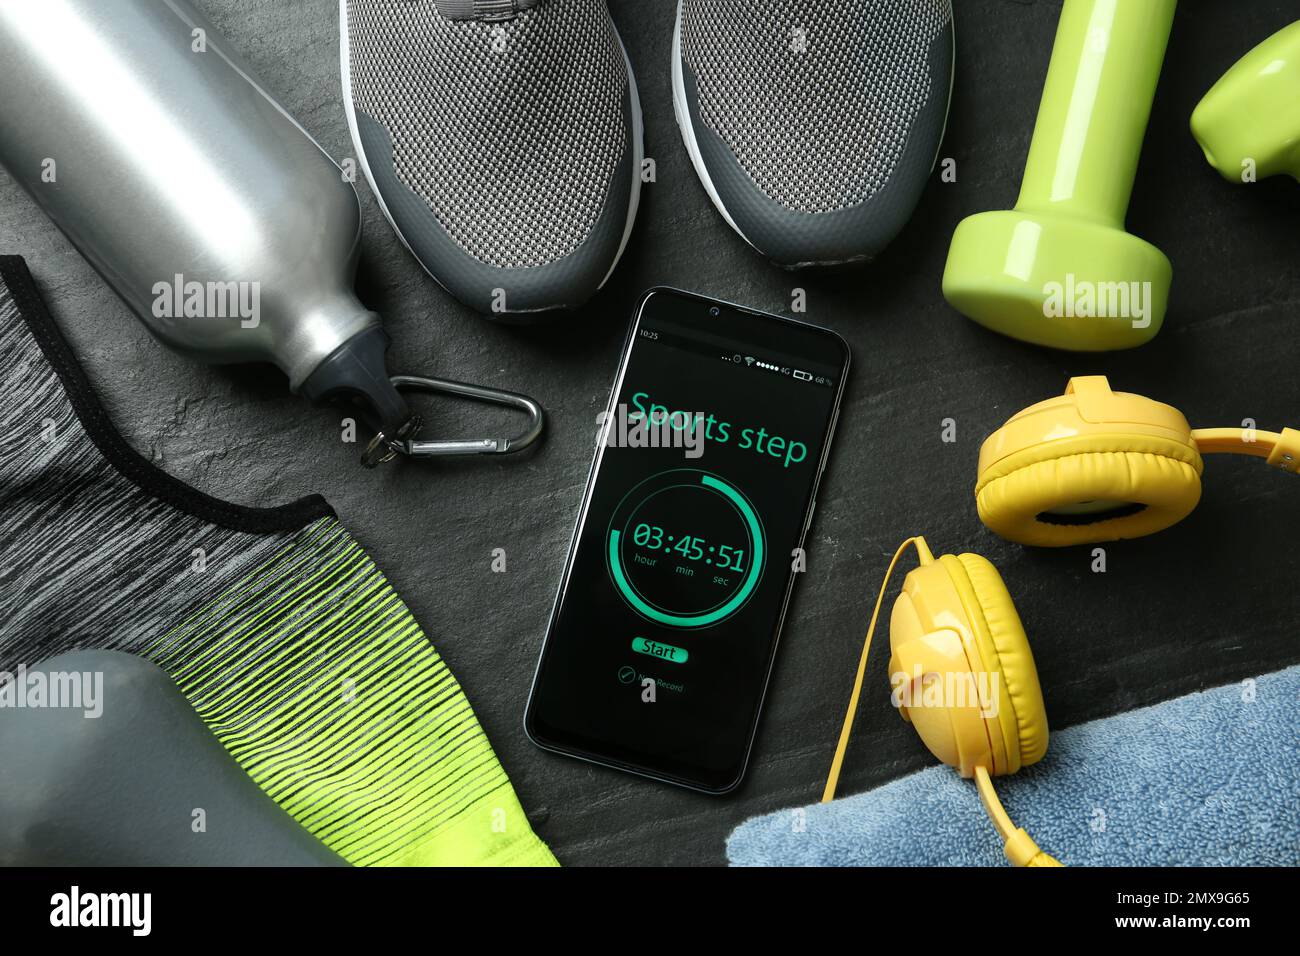 Smartphone con aplicación de contador de pasos y accesorios de fitness sobre fondo negro, plano Foto de stock